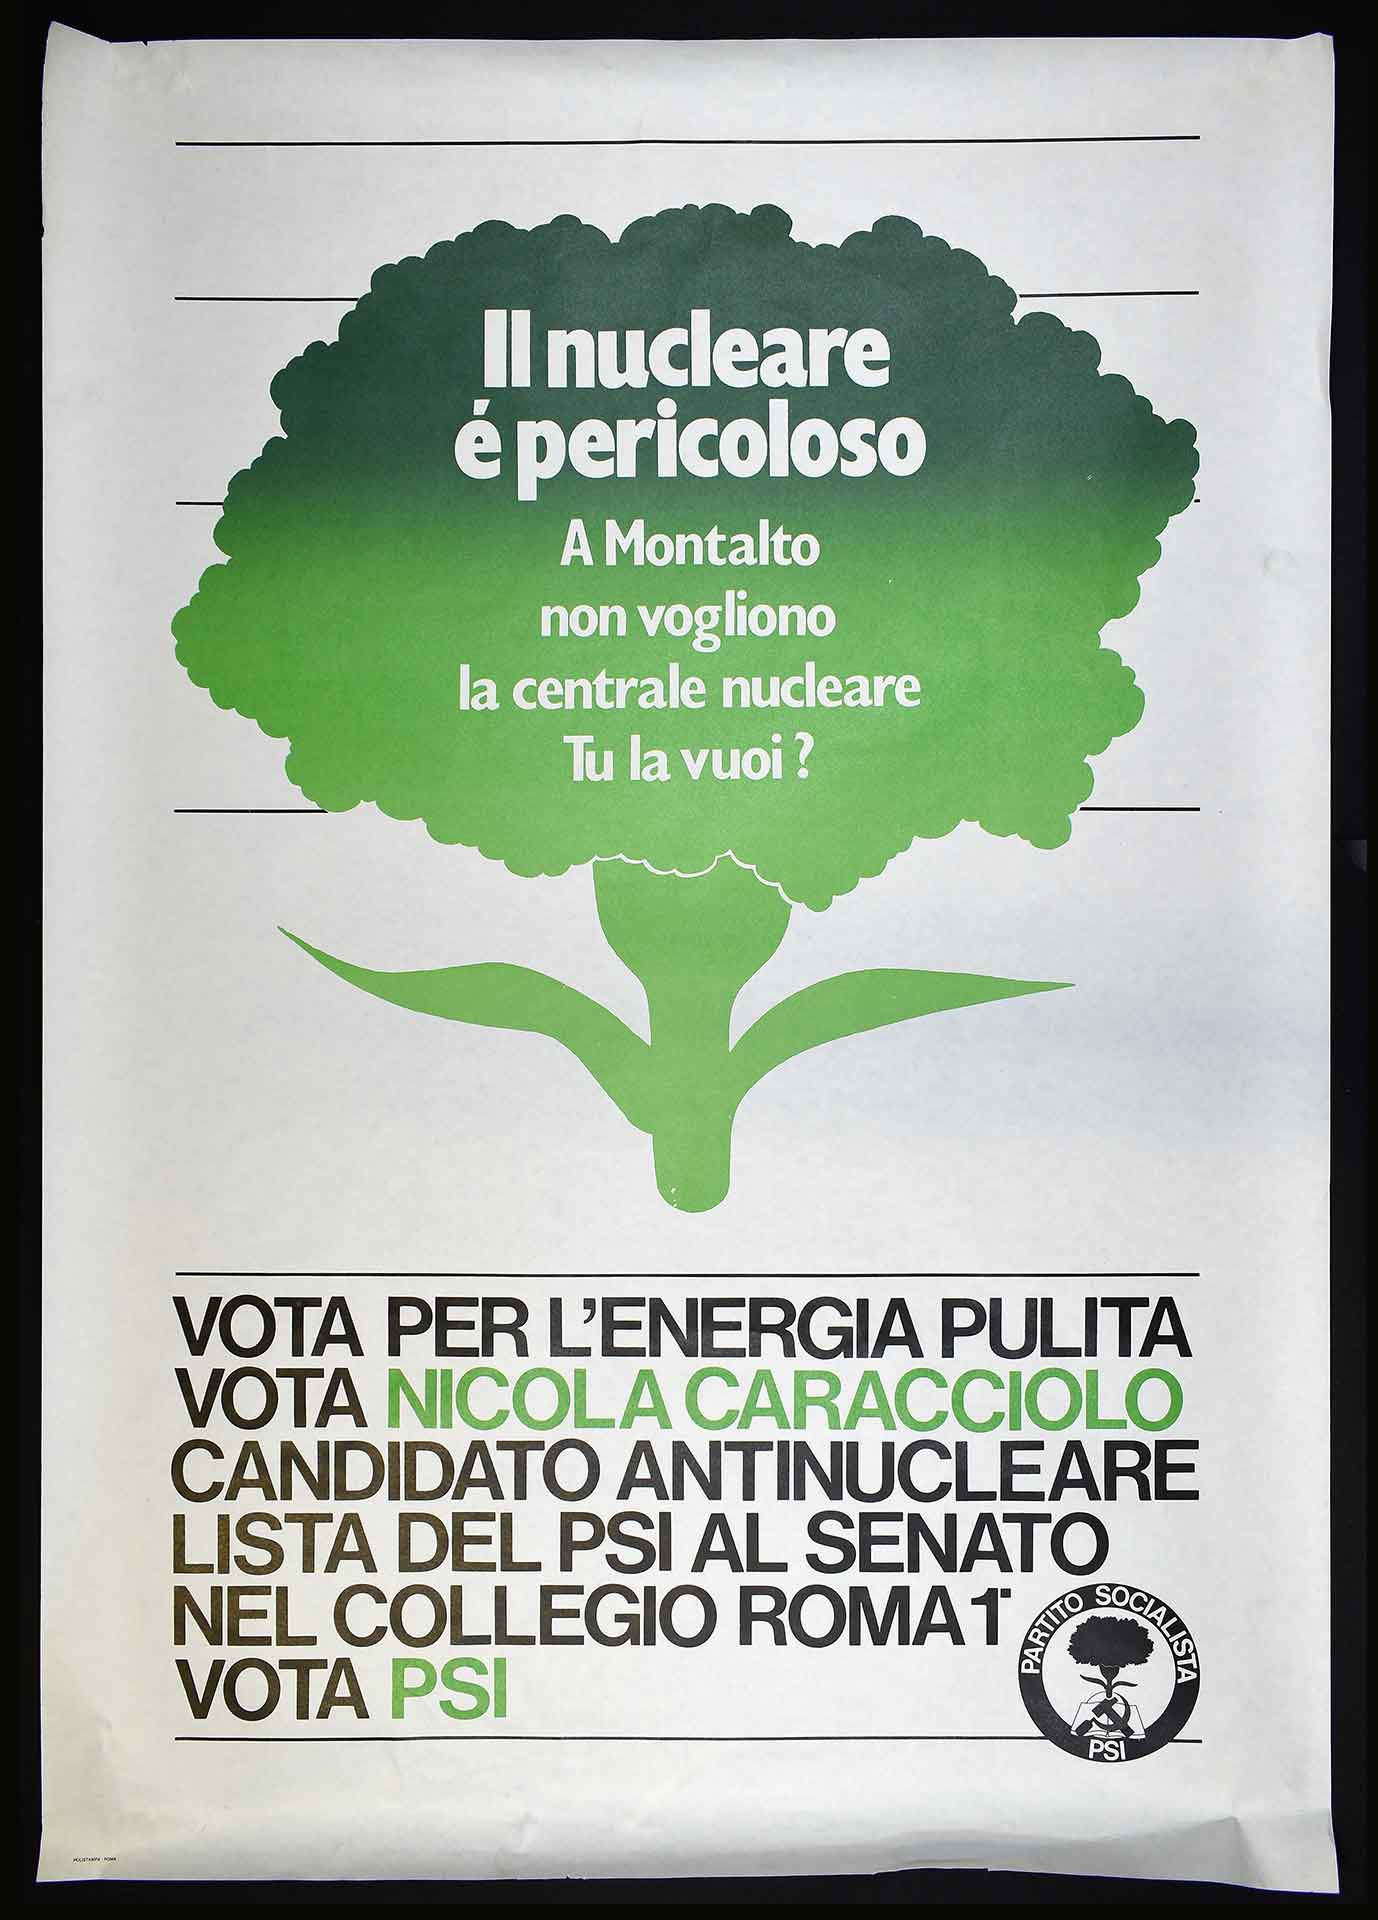 Nicola Caracciolo candidato antinucleare nella lista del Partito socialista italiano (PSI) al Senato. Stampa Polistampa, Roma. Campagna elettorale.